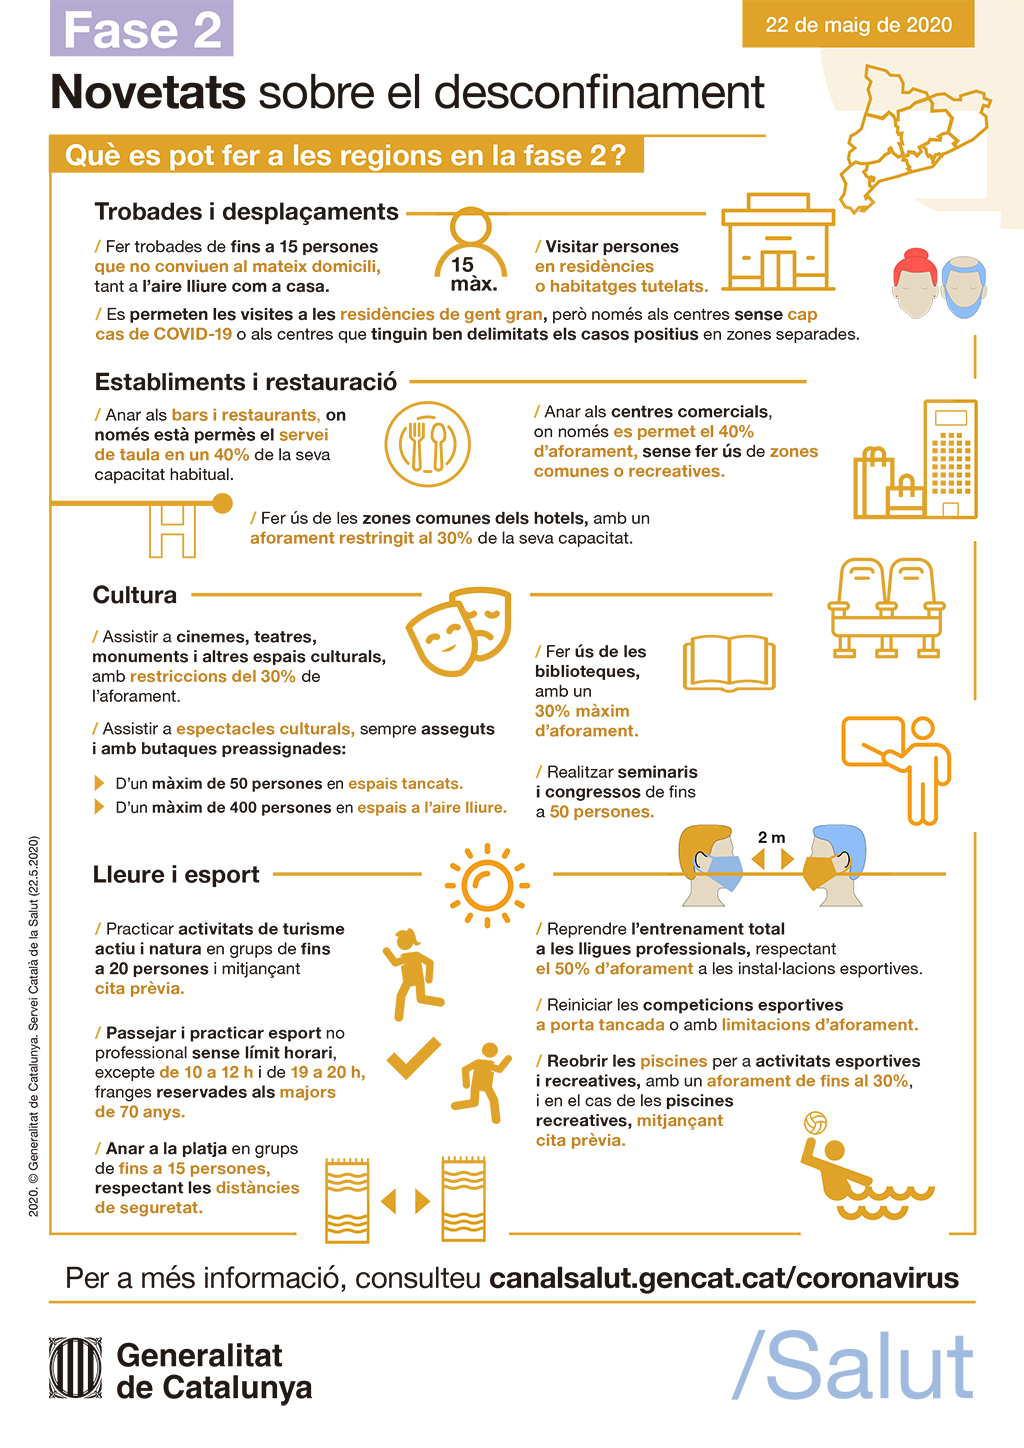 Infografia de la Generalitat sobre la Fase 2